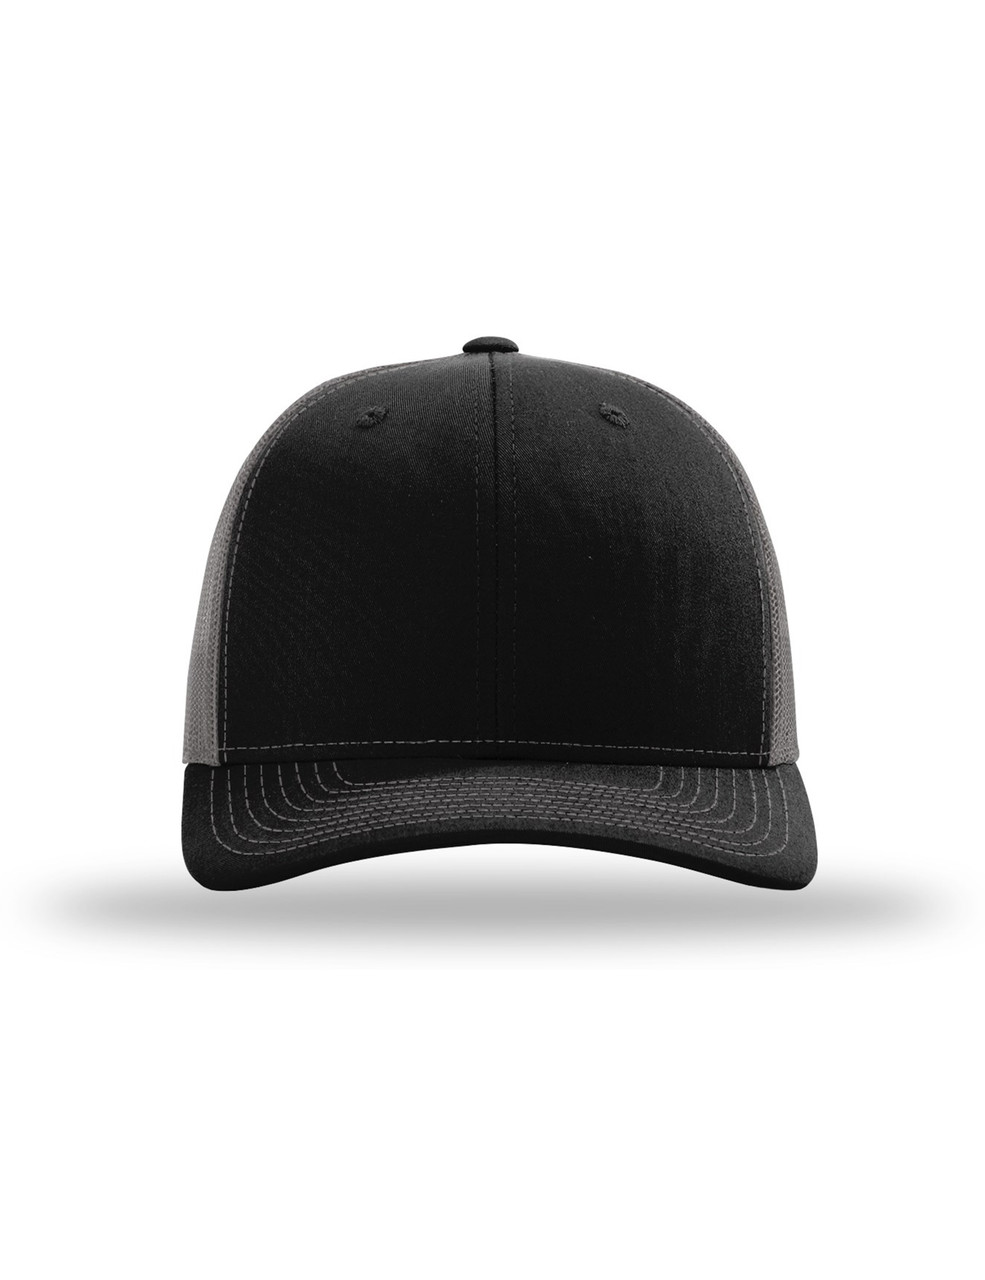 Blank Black Trucker Hat